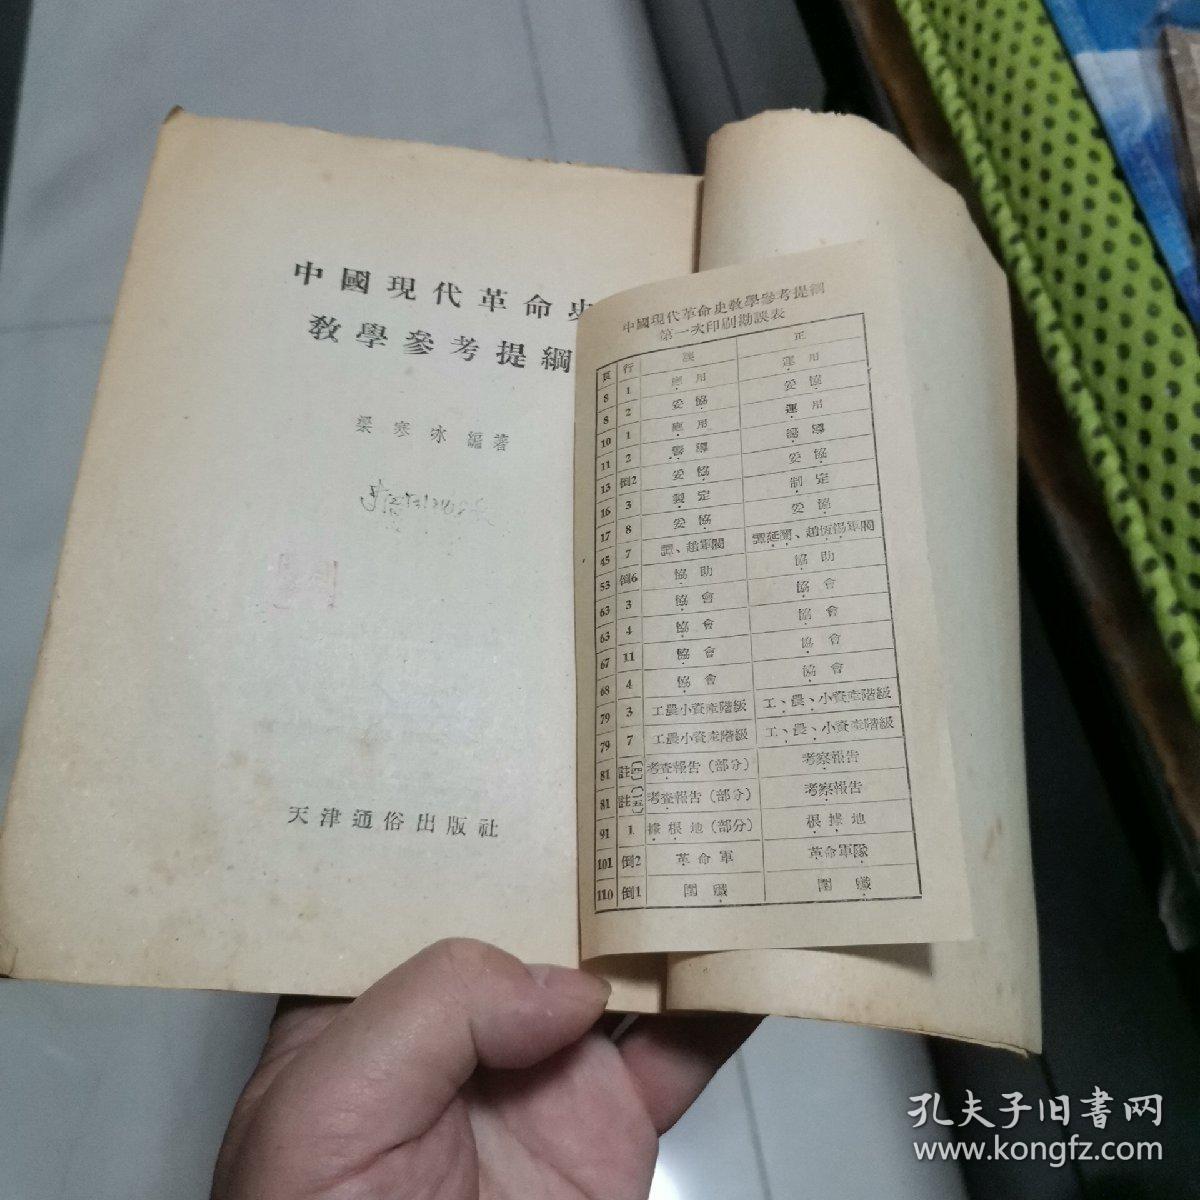 中国现代革命史教学参考提纲 1955年10月一版一印